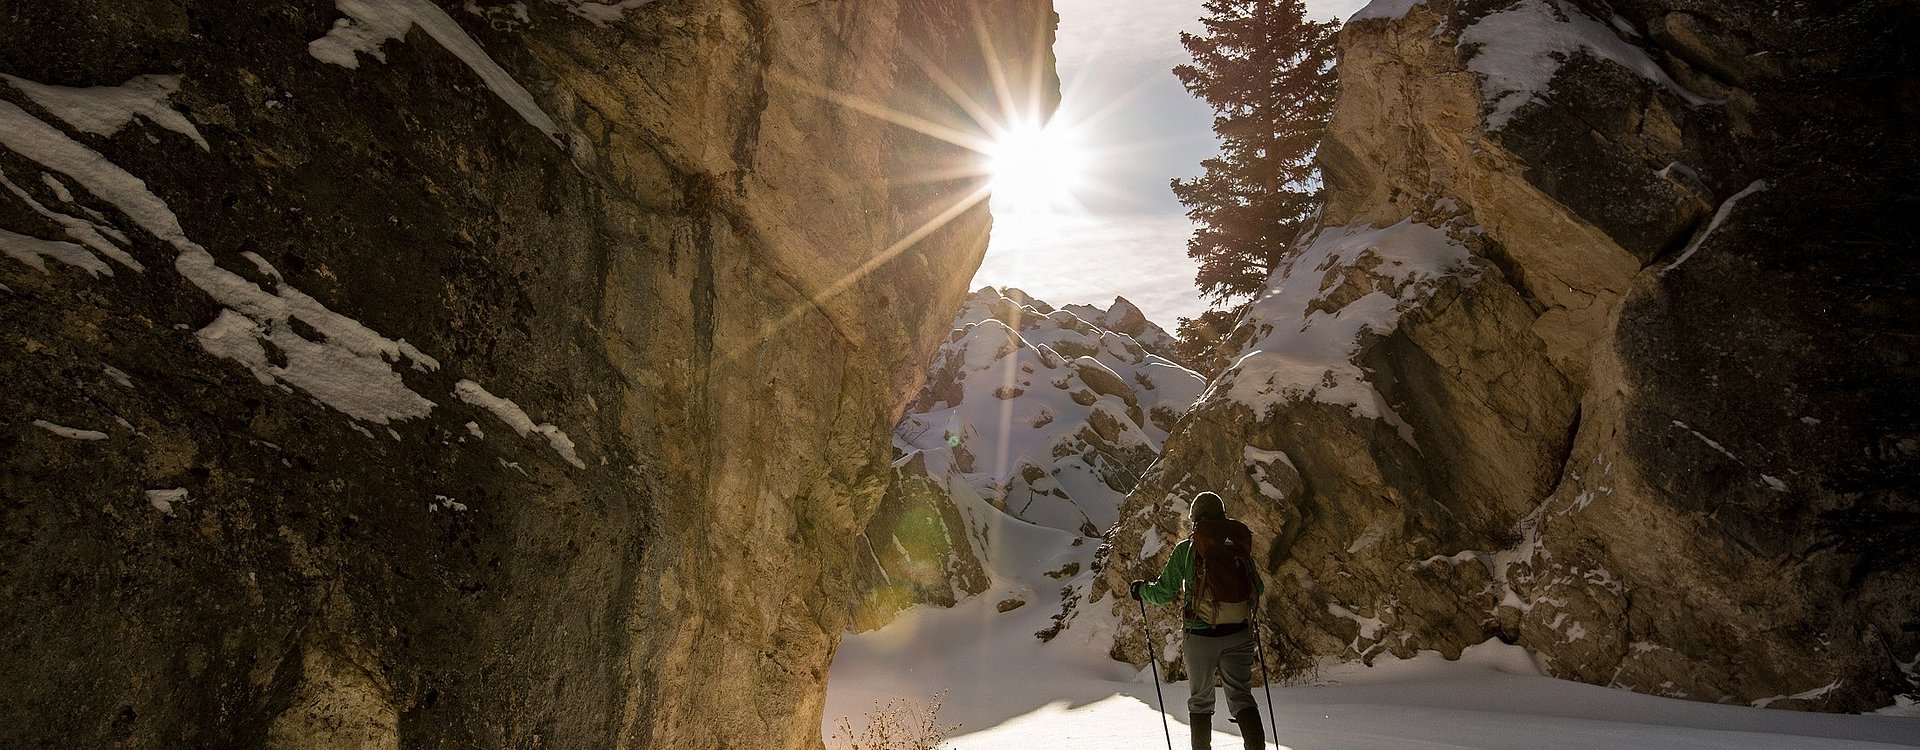 Skitouren-Wanderin im Tiefschnee mit untergehender Sonne